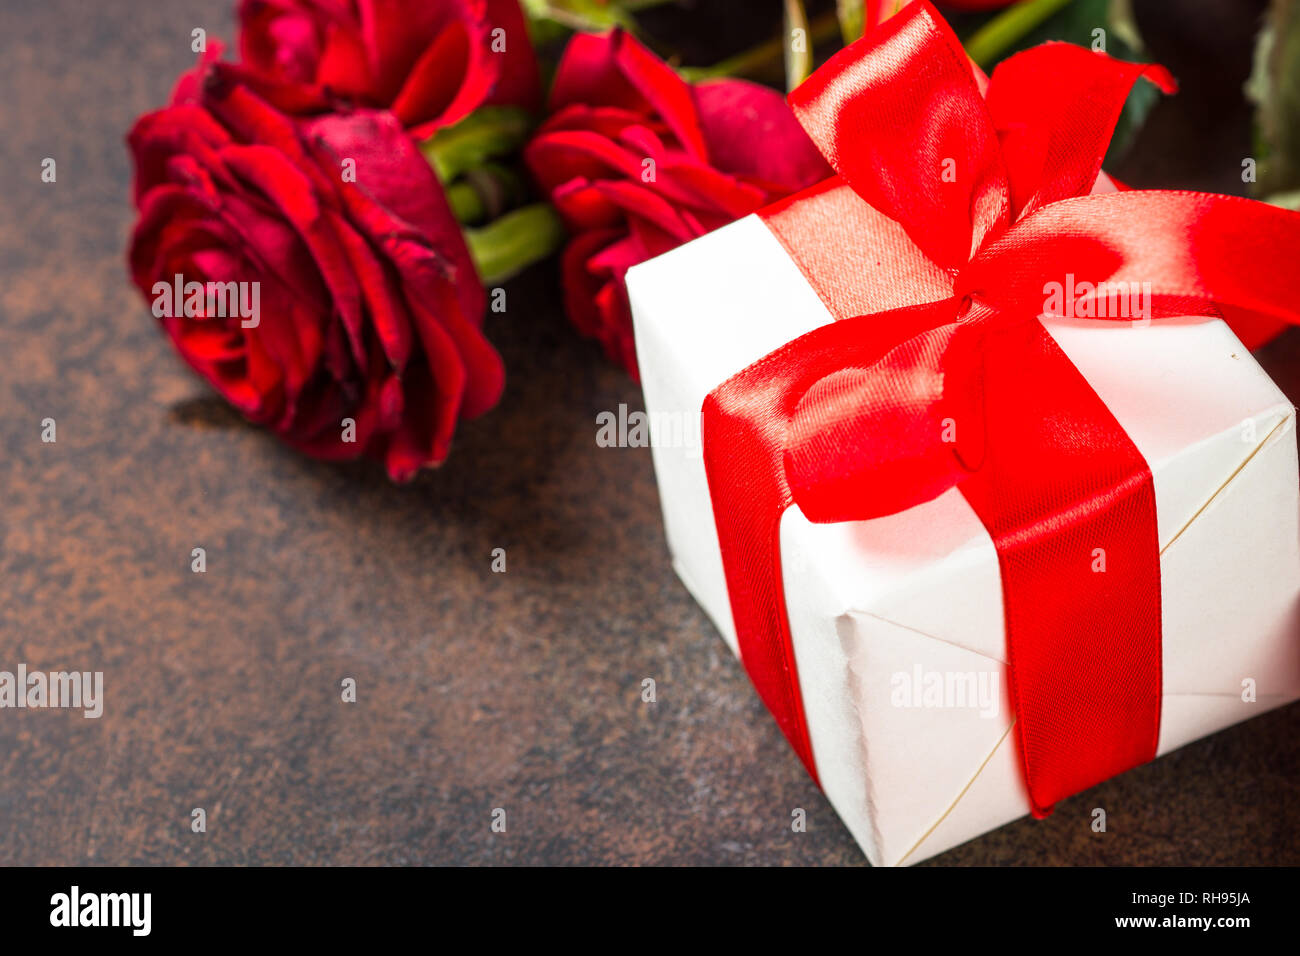 Rote Rosen Blume Und Geschenk Box Auf Dunklen Tisch Aus Stein